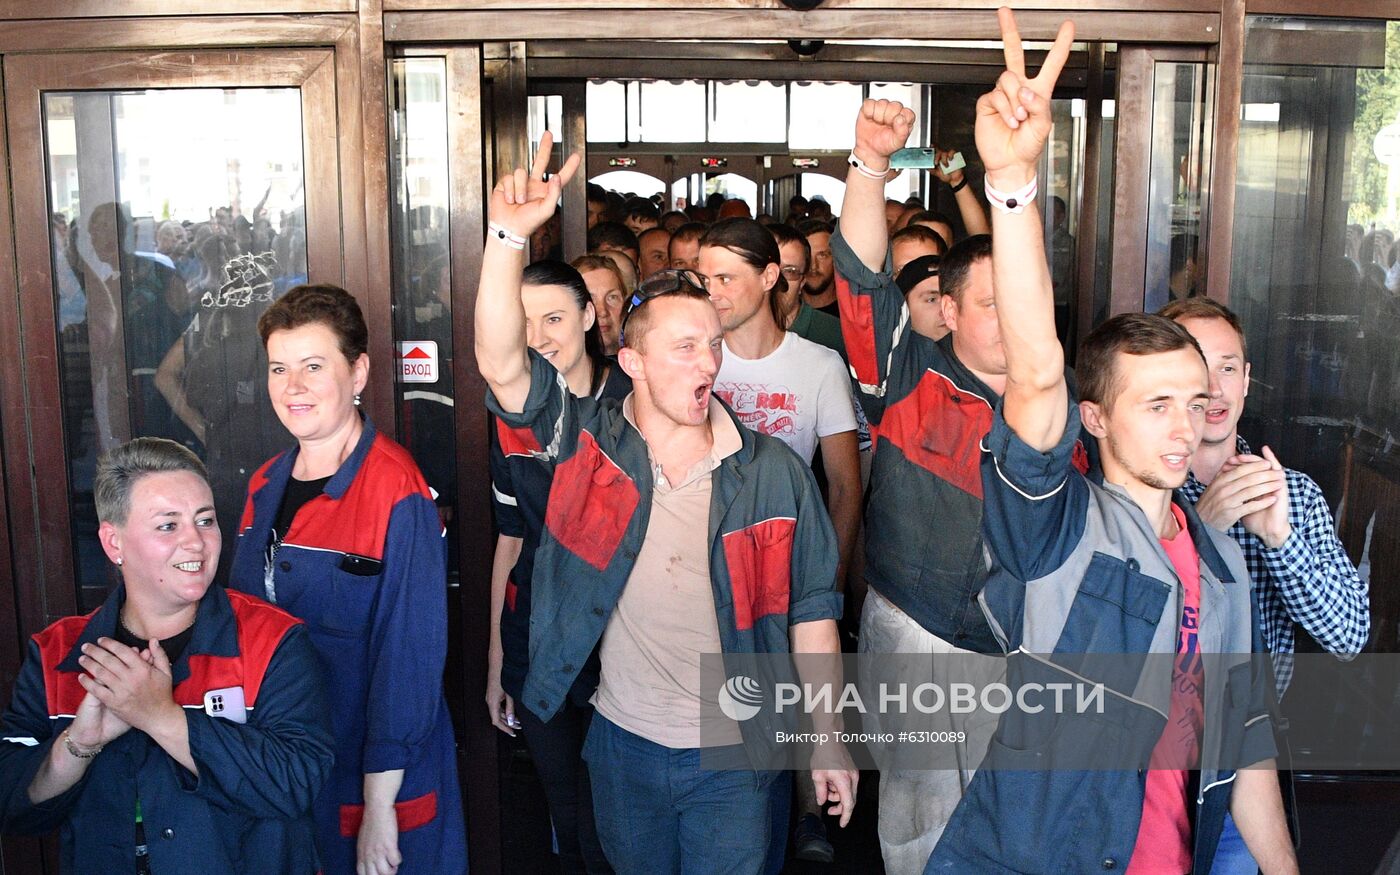 Акция работников заводов в Минске